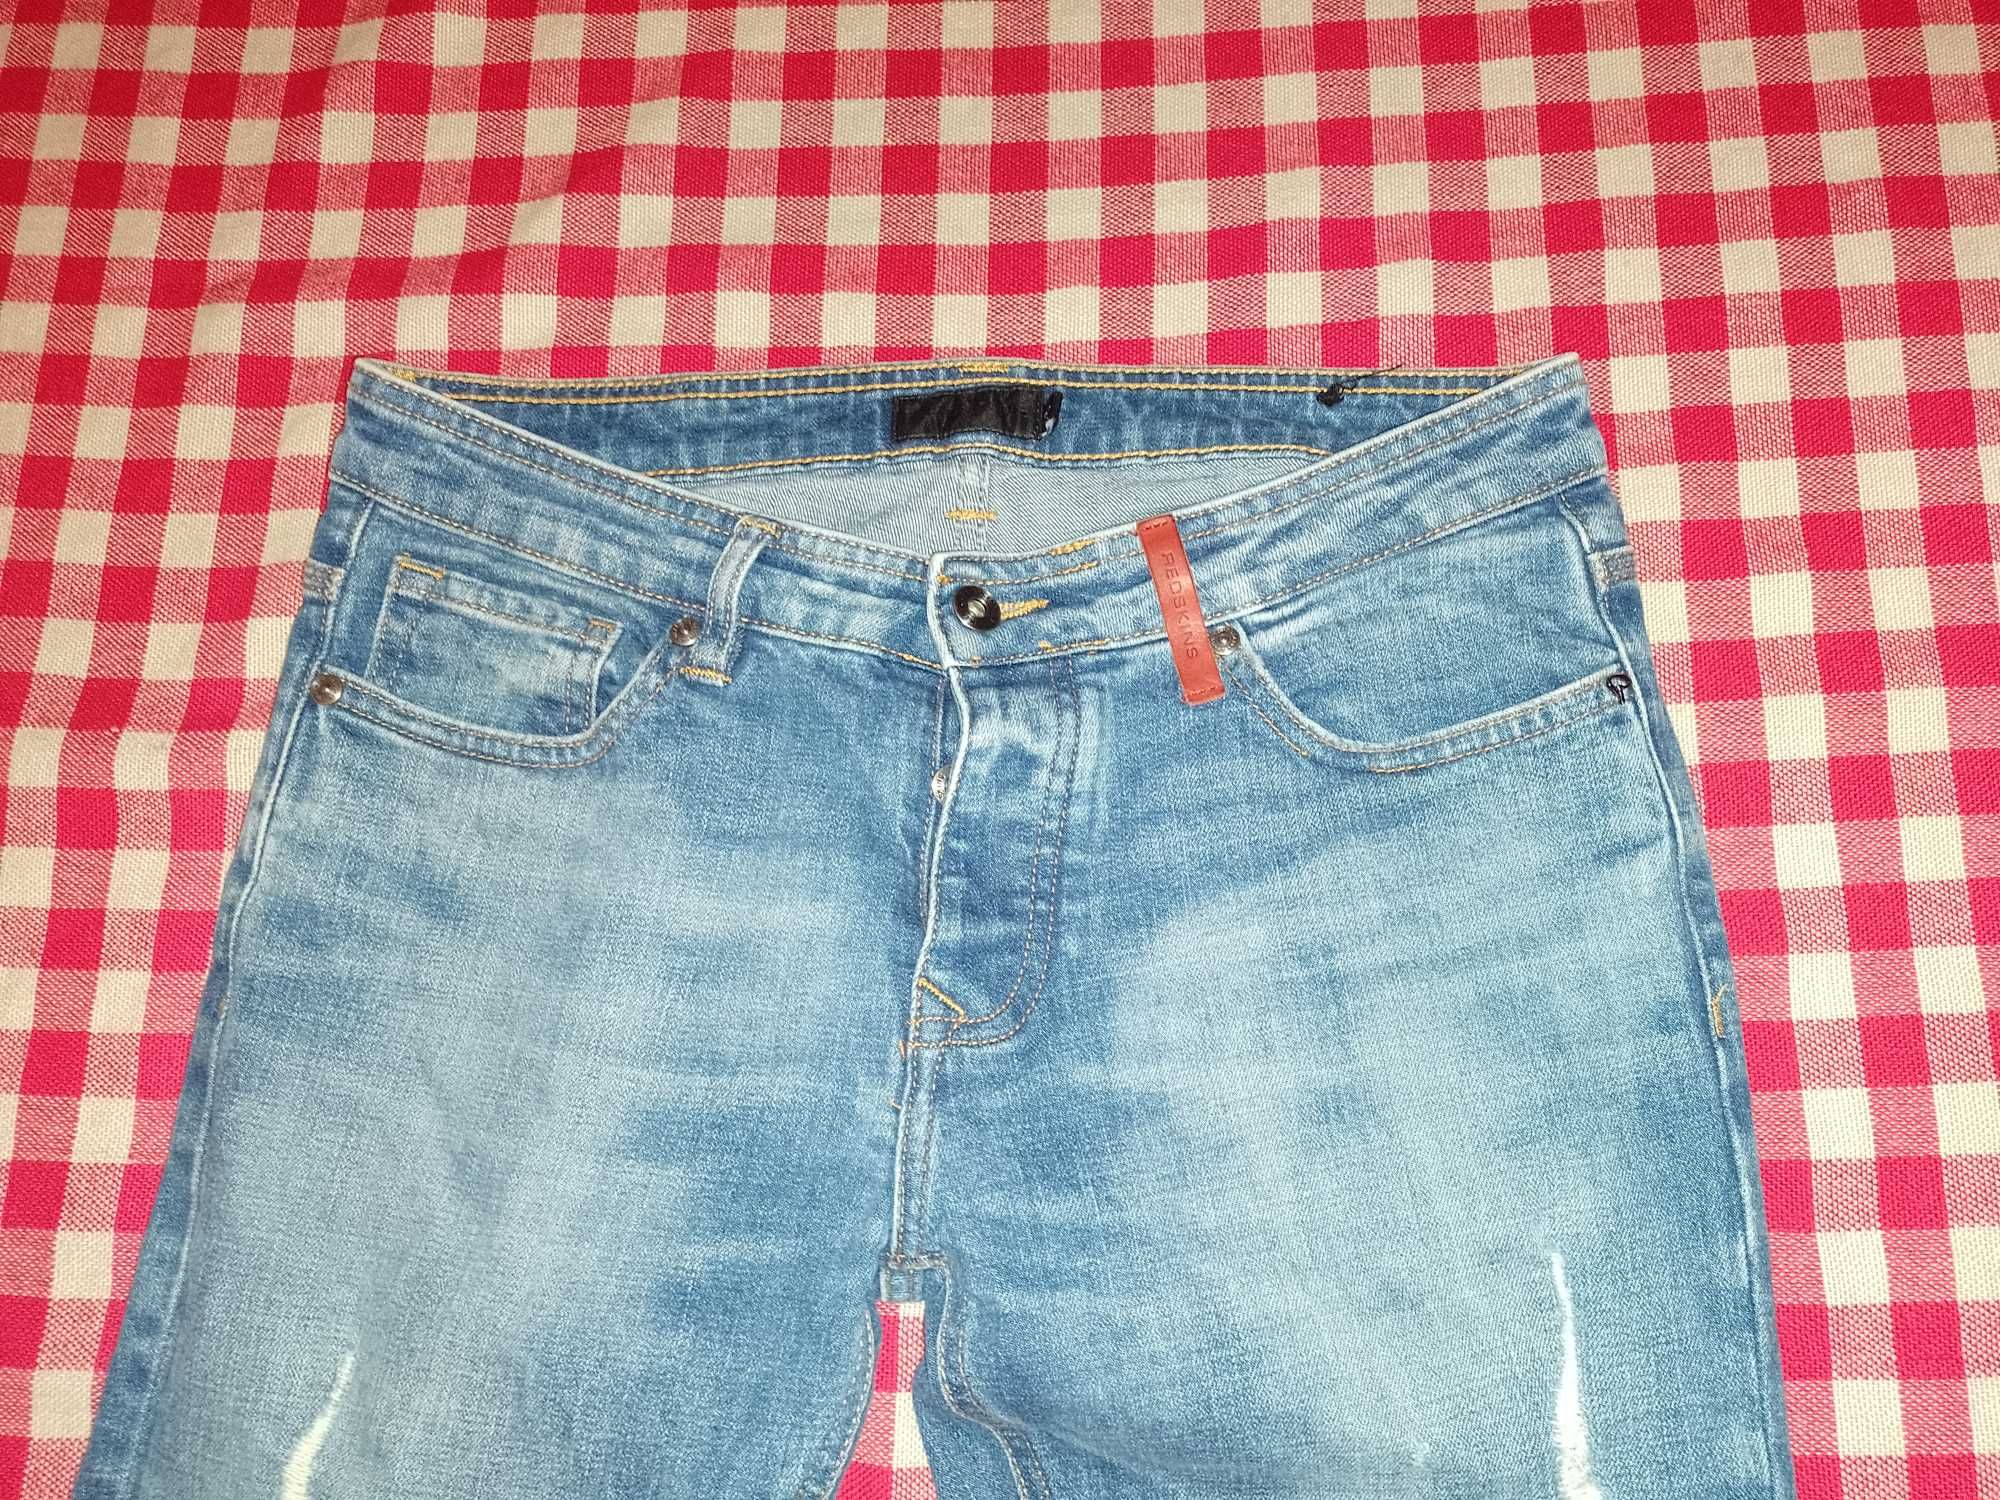 Spodnie męskie Redskins jeans W30 L32 S / M